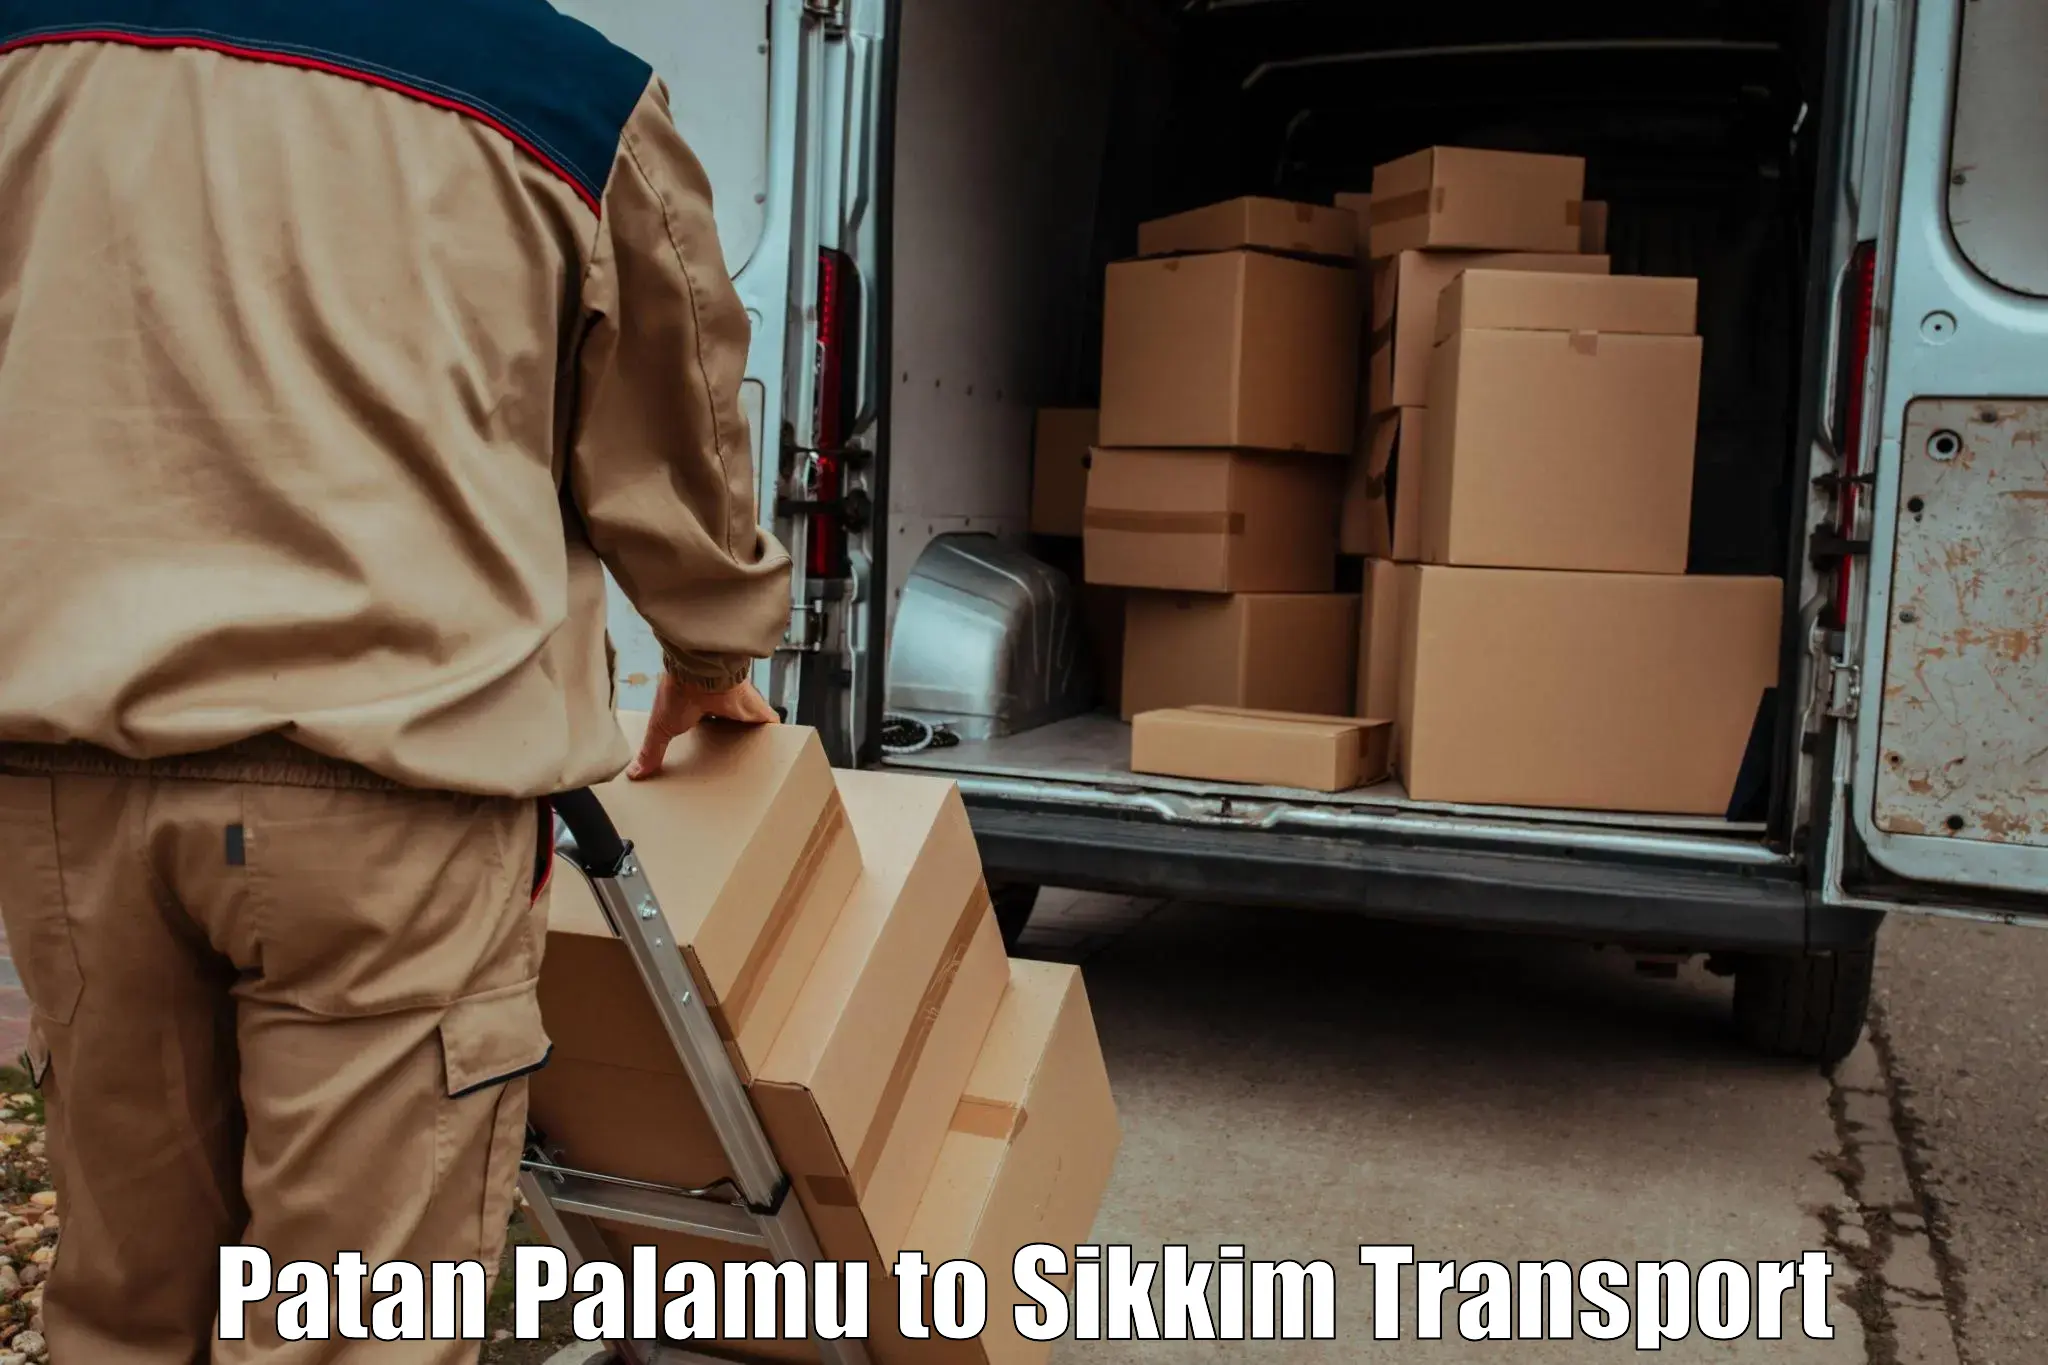 Bike shipping service Patan Palamu to North Sikkim